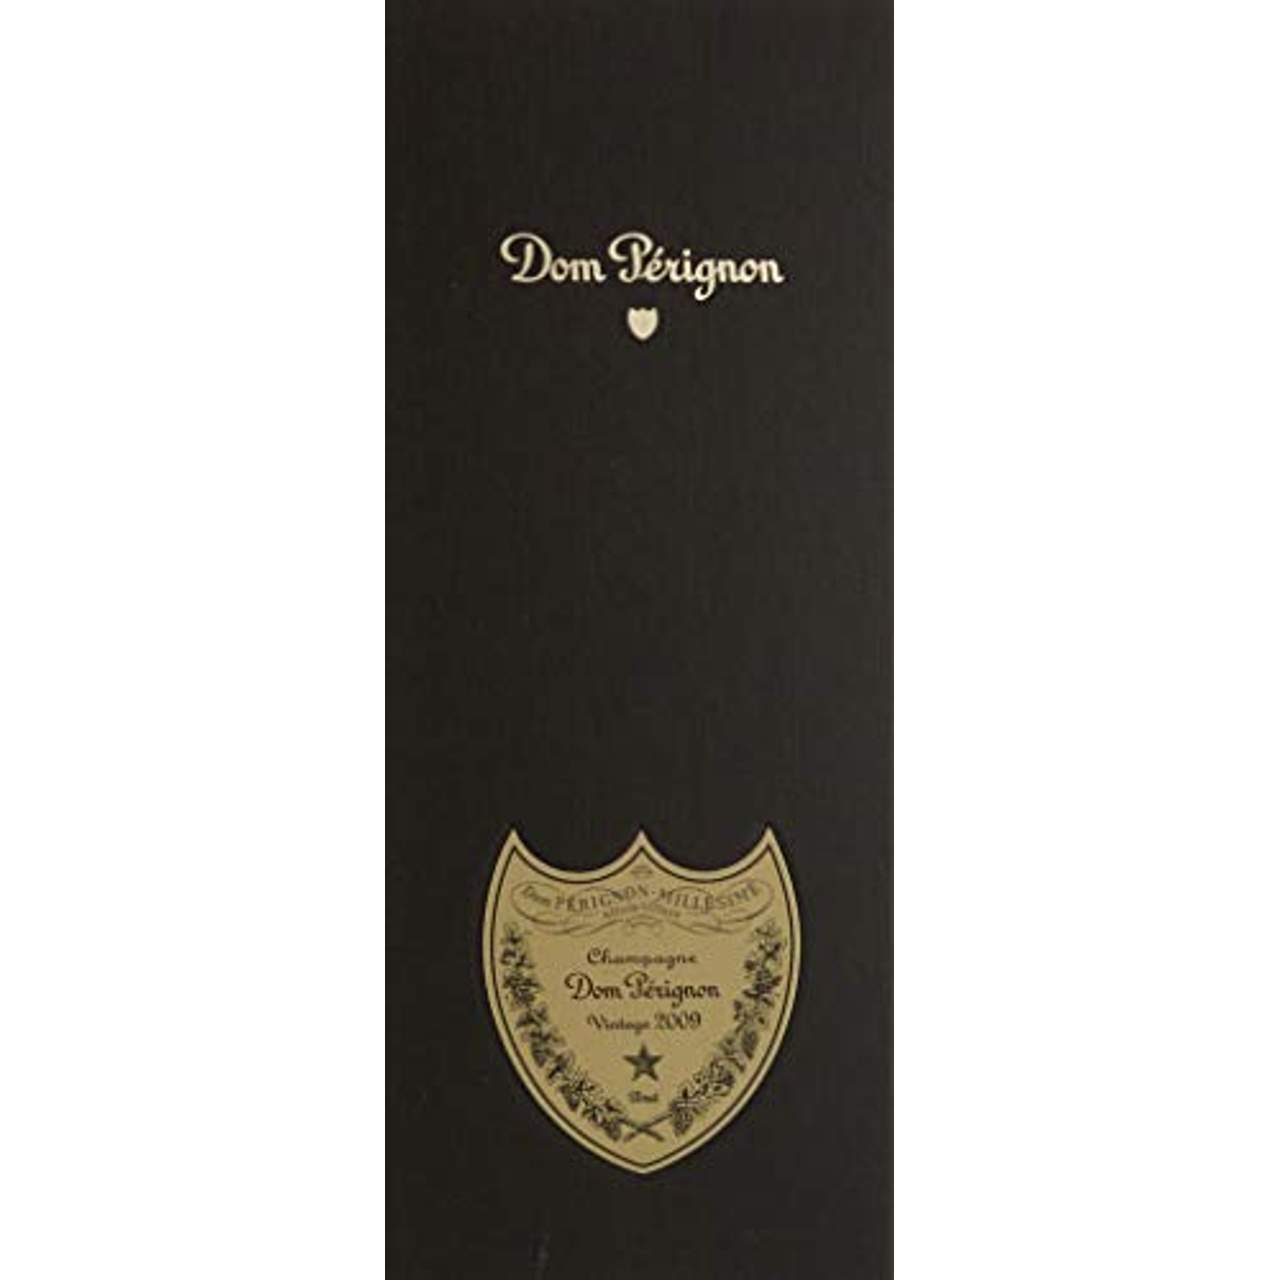 Dom Pérignon Vintage 2009 Brut Champagner